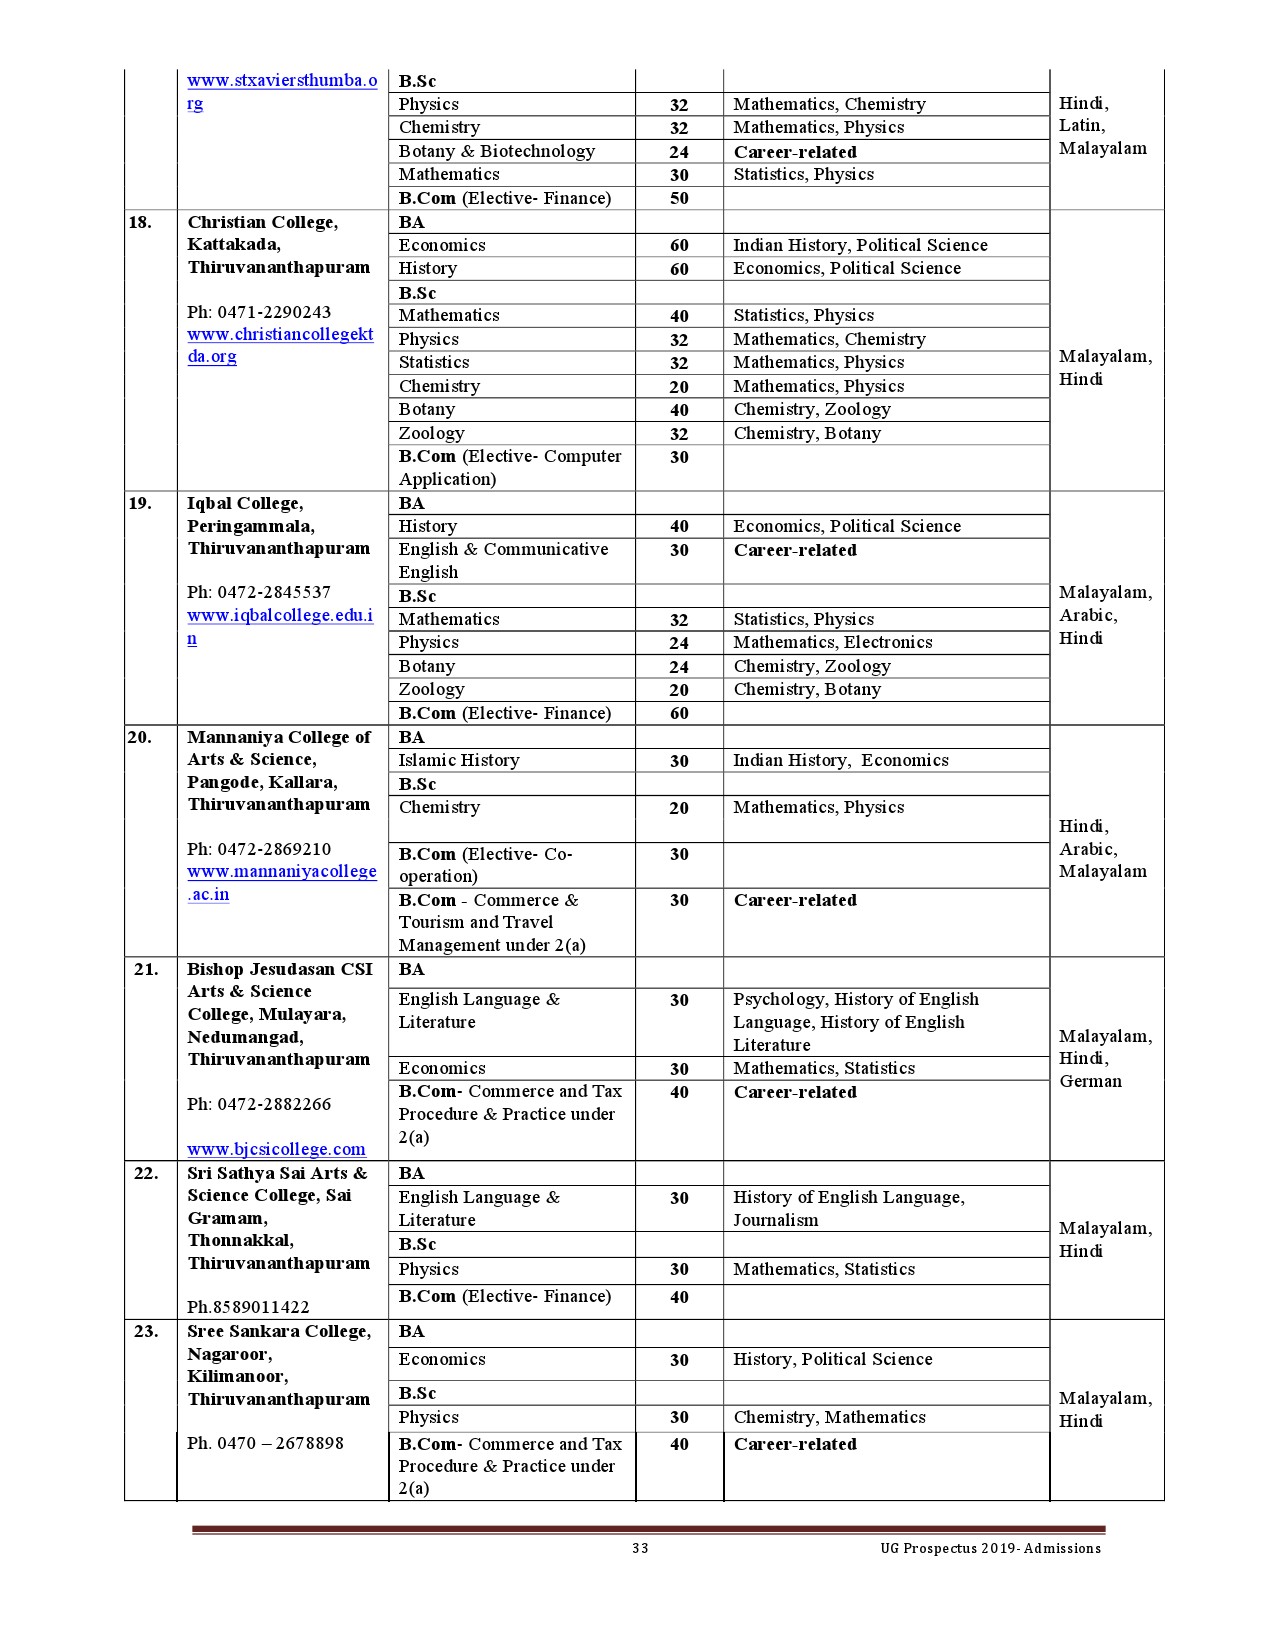 Kerala University UG Admission Prospectus 2019 - Notification Image 33